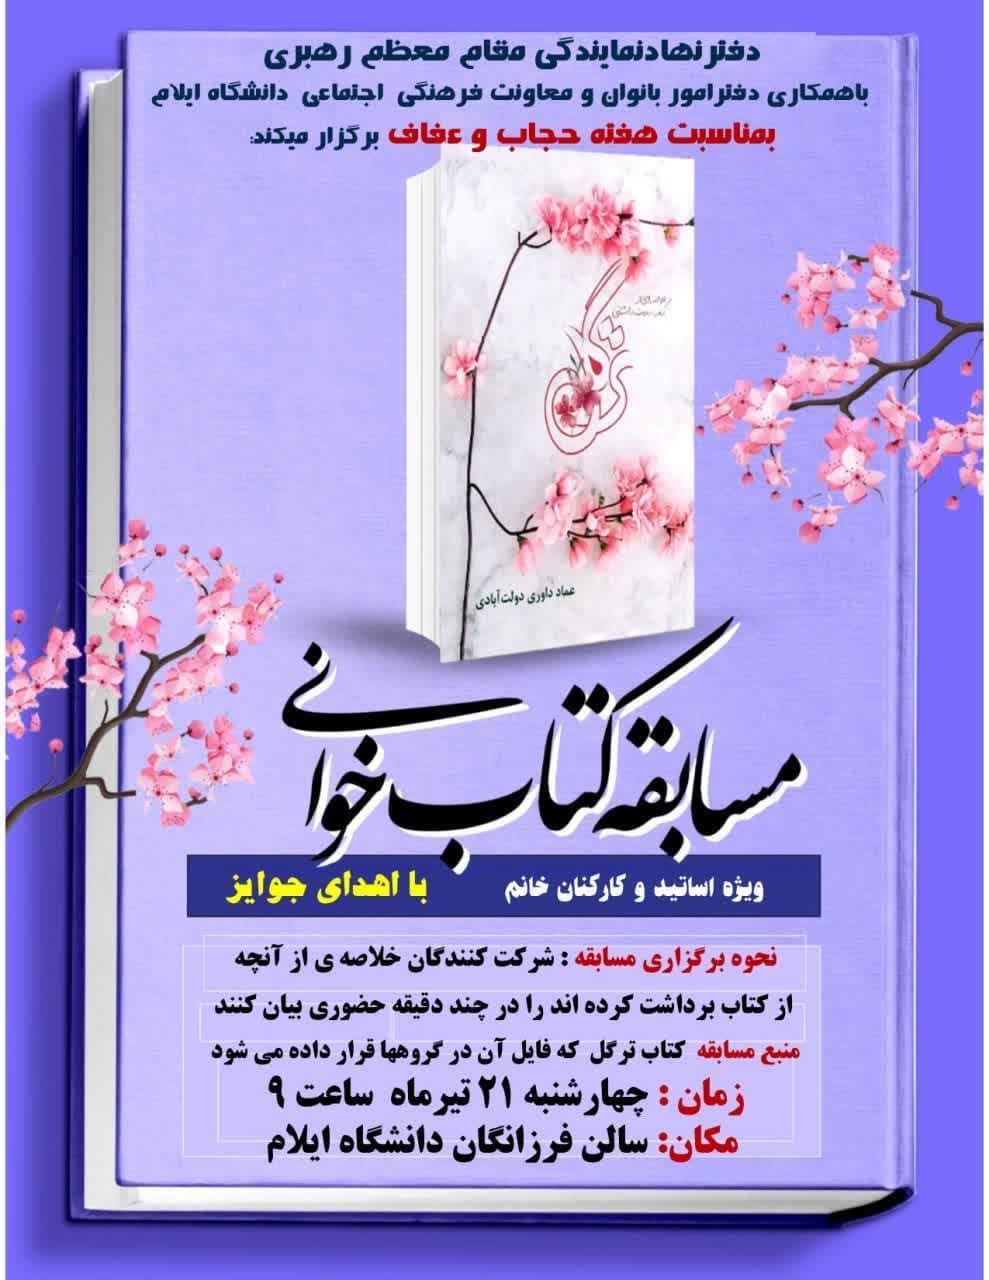 برگزاري مسابقه کتابخواني بمناسبت هفته حجاب و عفاف